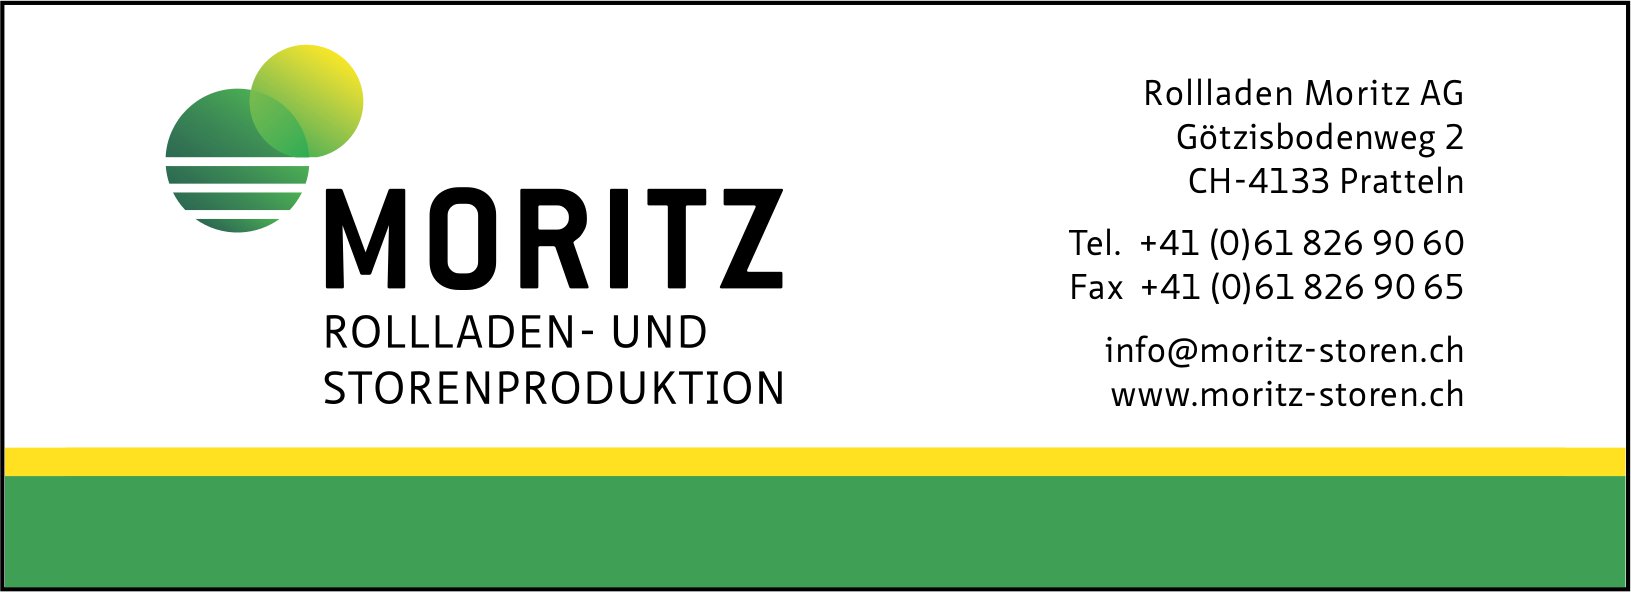 Rollladen Moritz AG, Pratteln - Rollladen- und Storenproduktion